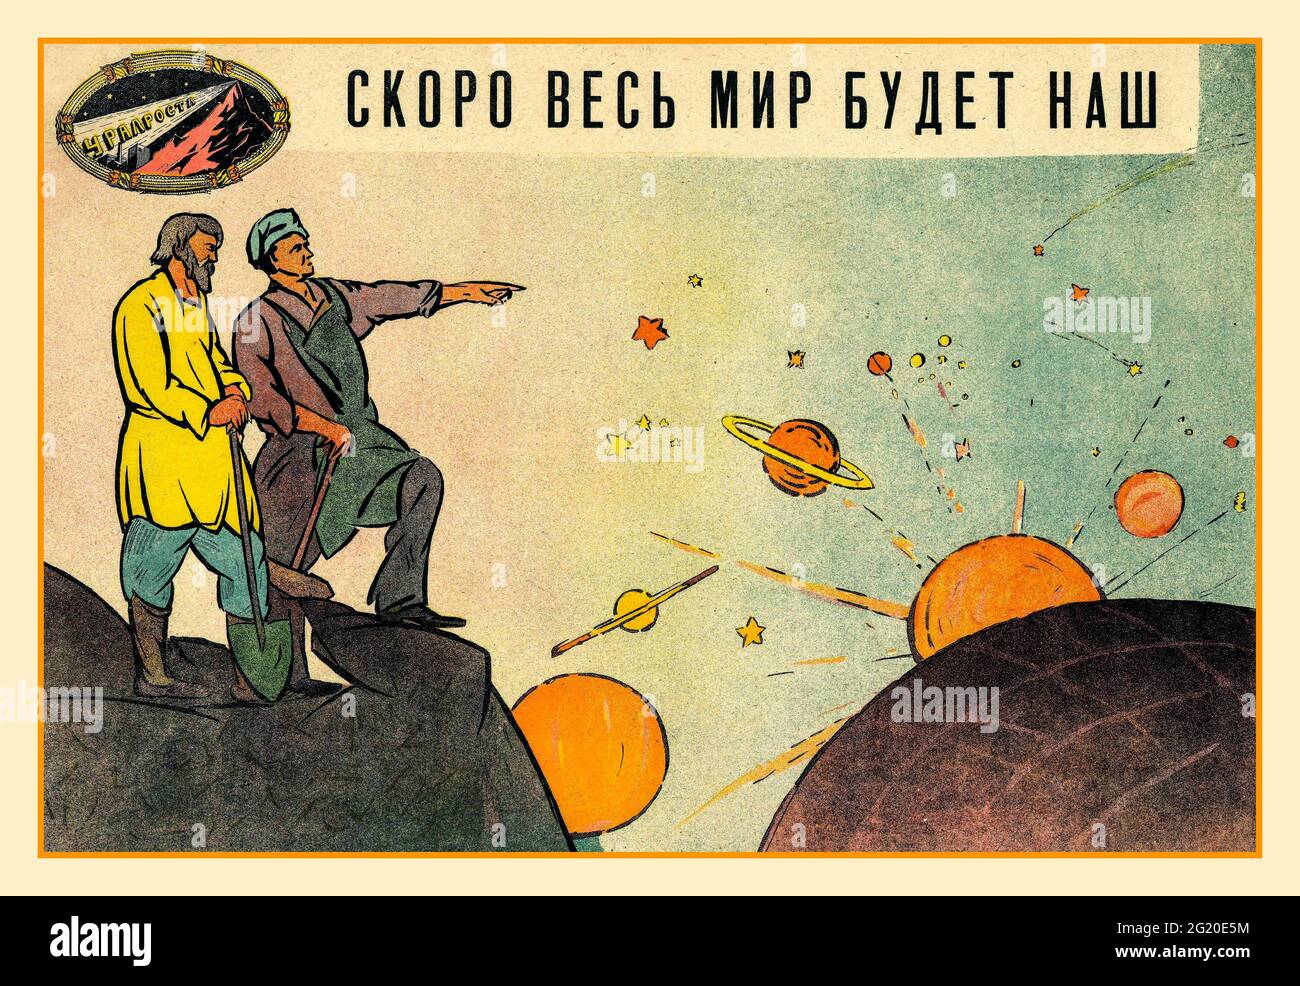 Propagandaplakat der sowjetischen UdSSR Russland «’soon wird die ganze Welt unsere sein»’. [Jekaterinburg] : Ural-Abteilung der ROSTA, UdSSR-Sowjetrussland [1920]. Farblithographie, Stockfoto